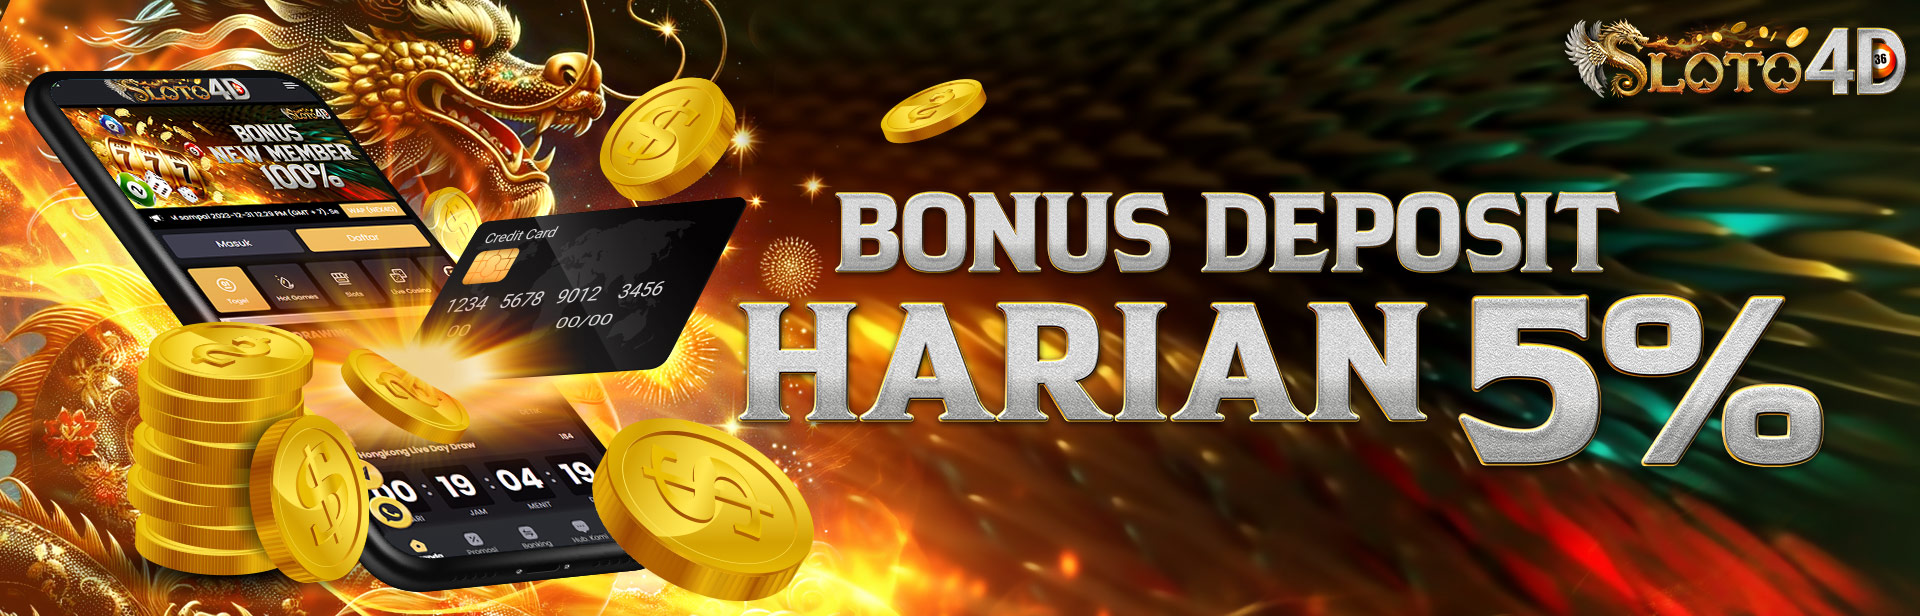 Bonus Deposit Harian Slot Game 5% Tiap Harinya